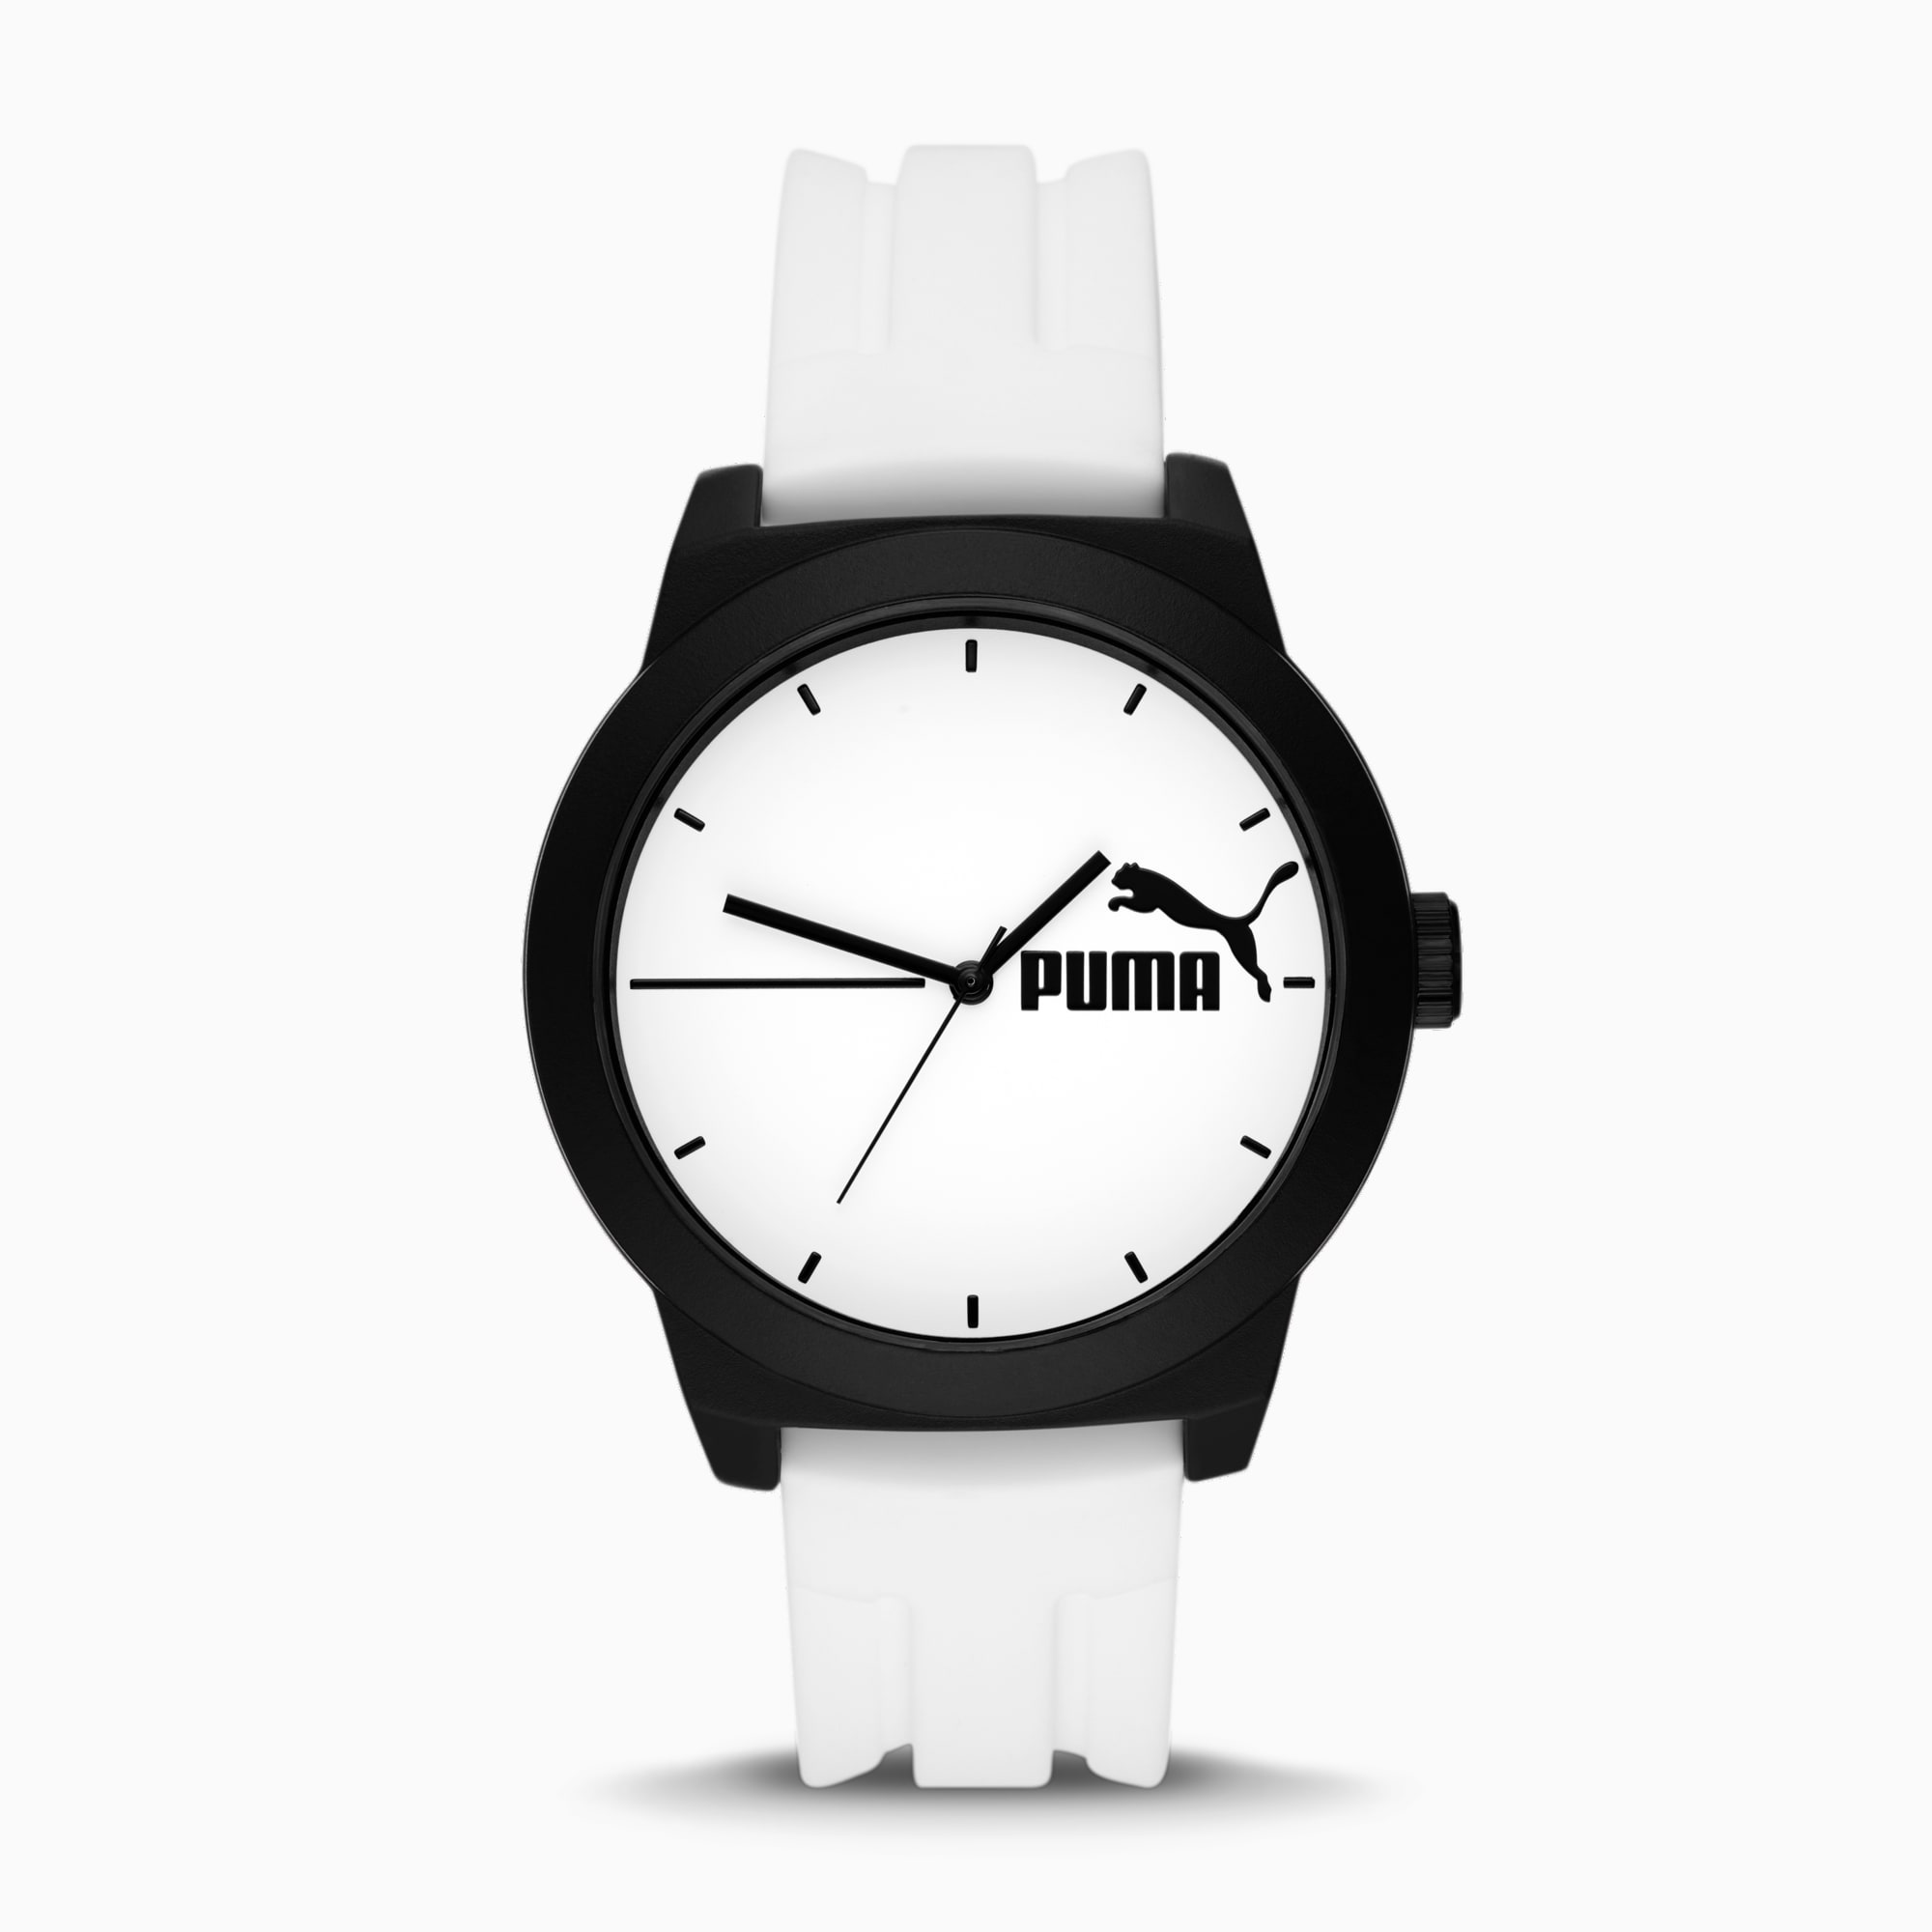 Onvoorziene omstandigheden Maand Geval Puma 5 Three-Hand Black Silicone Watch | | PUMA